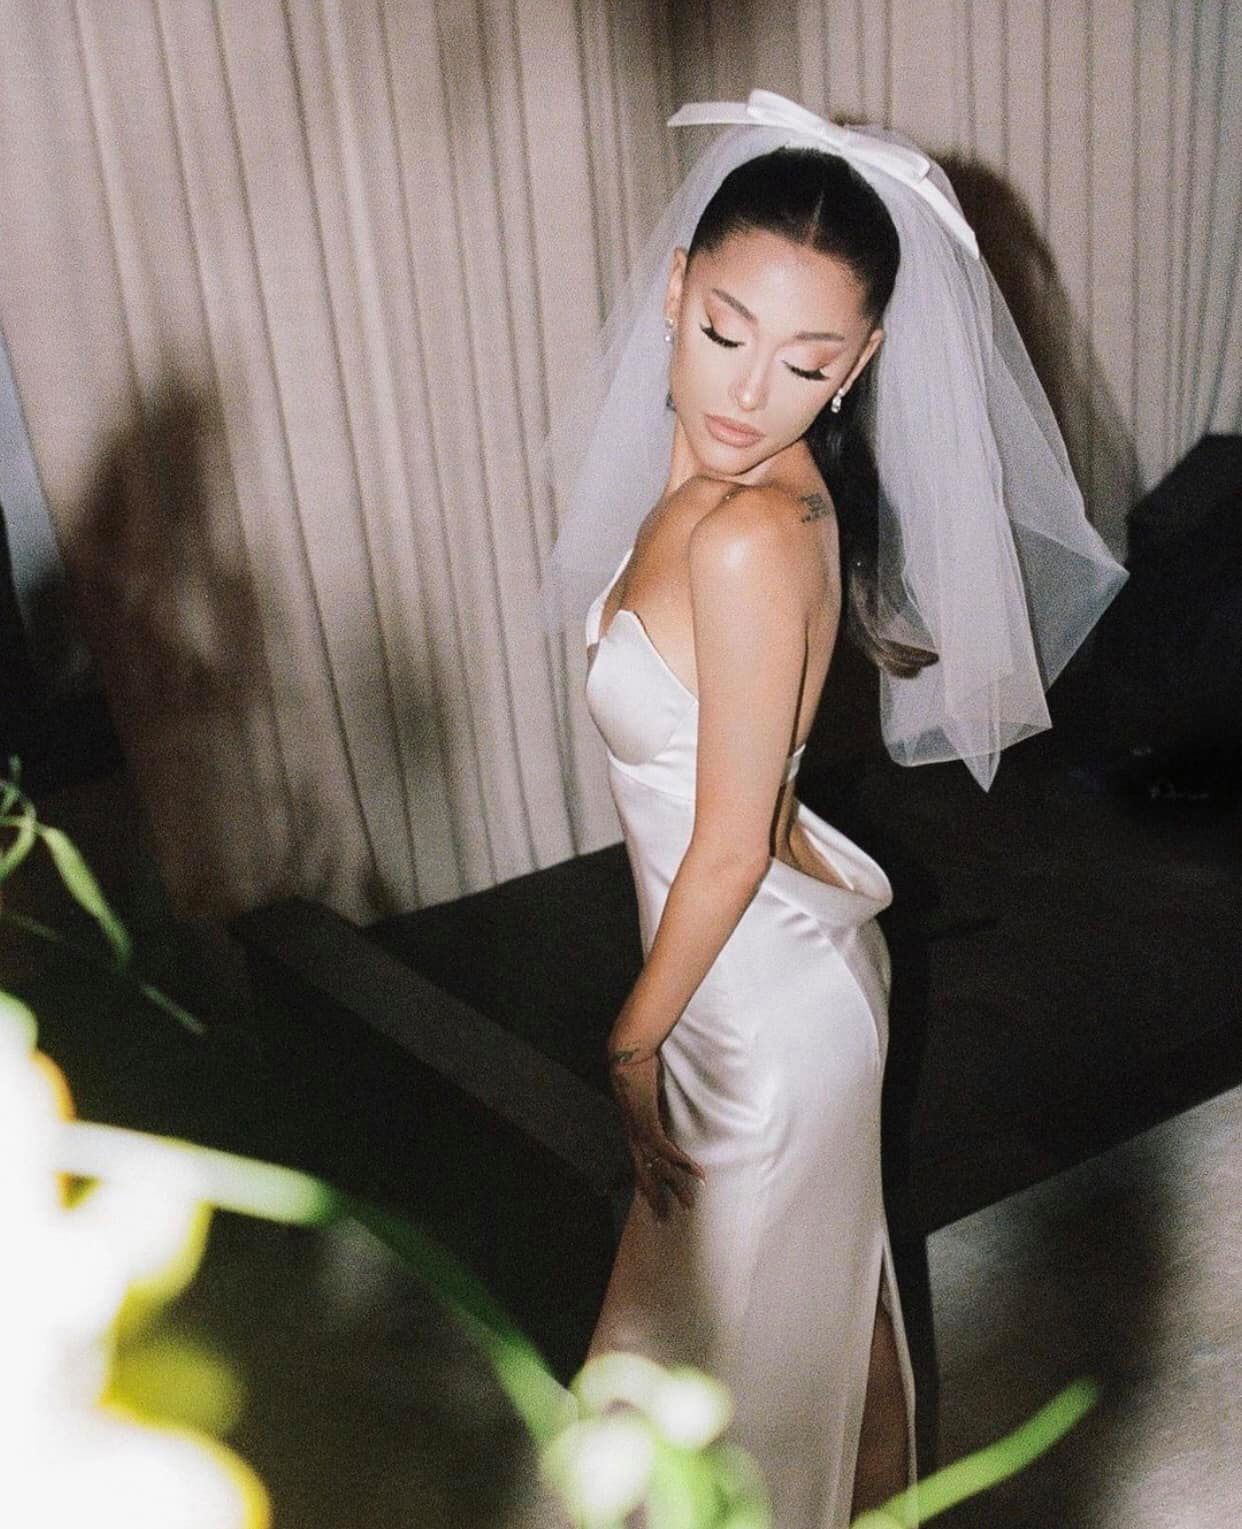 Hình ảnh đẹp nhất hôm nay: Ariana Grande, 1 chiếc váy cưới dung dị và 1 happy ending đẹp lòng người - Ảnh 2.